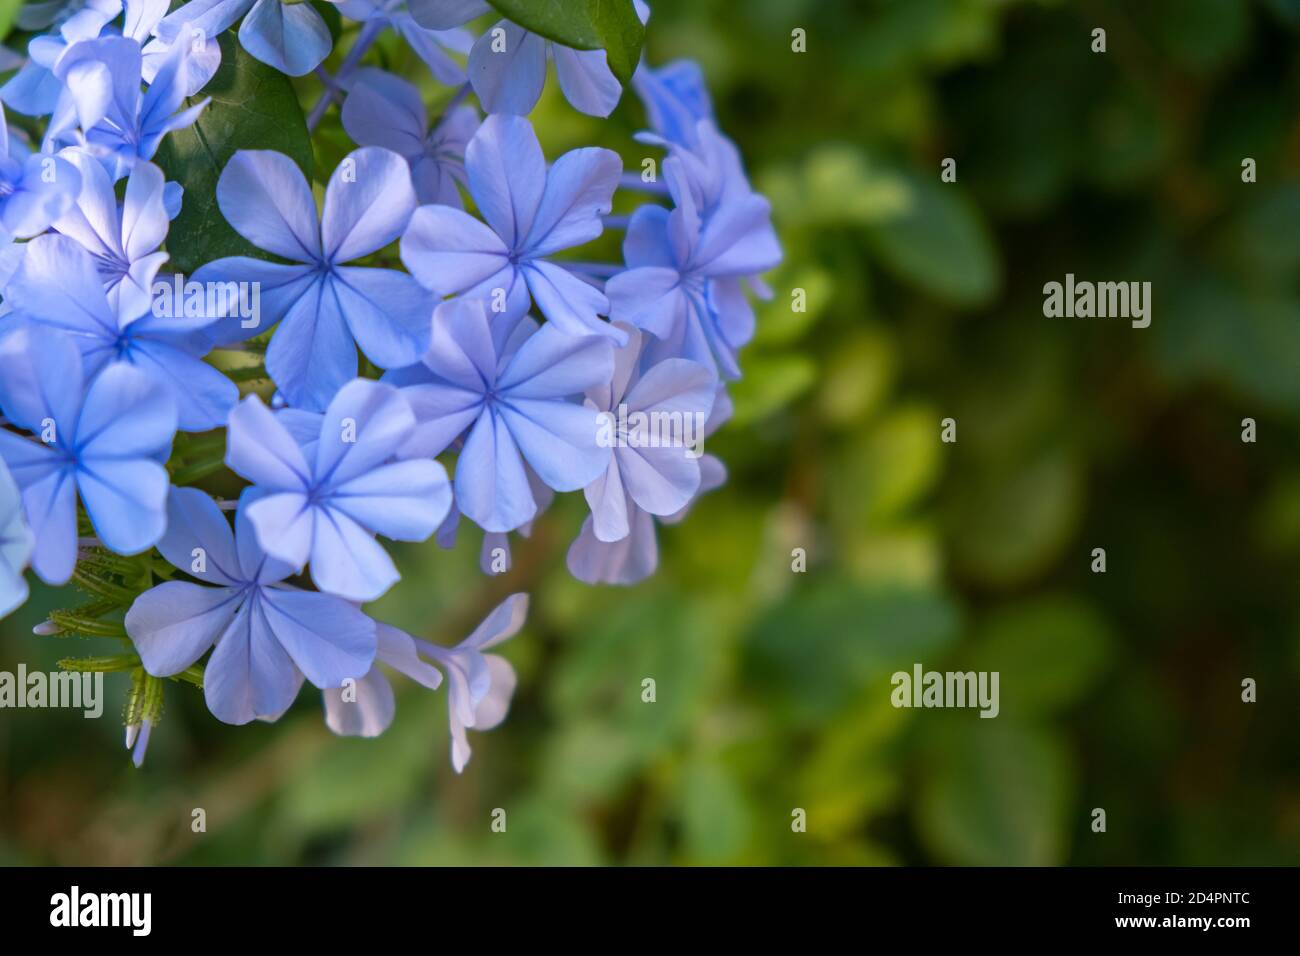 Cây hoa xanh lobelia với màu sắc tươi sáng và sắc nét như là một bức tranh tự nhiên giữa thiên nhiên. Nét đặc trưng và độc đáo của nó đã thu hút sự quan tâm của nhiều người. Hãy xem hình và dễ dàng cảm nhận được vẻ đẹp thiên nhiên tuyệt đẹp của cây hoa xanh lobelia này. 